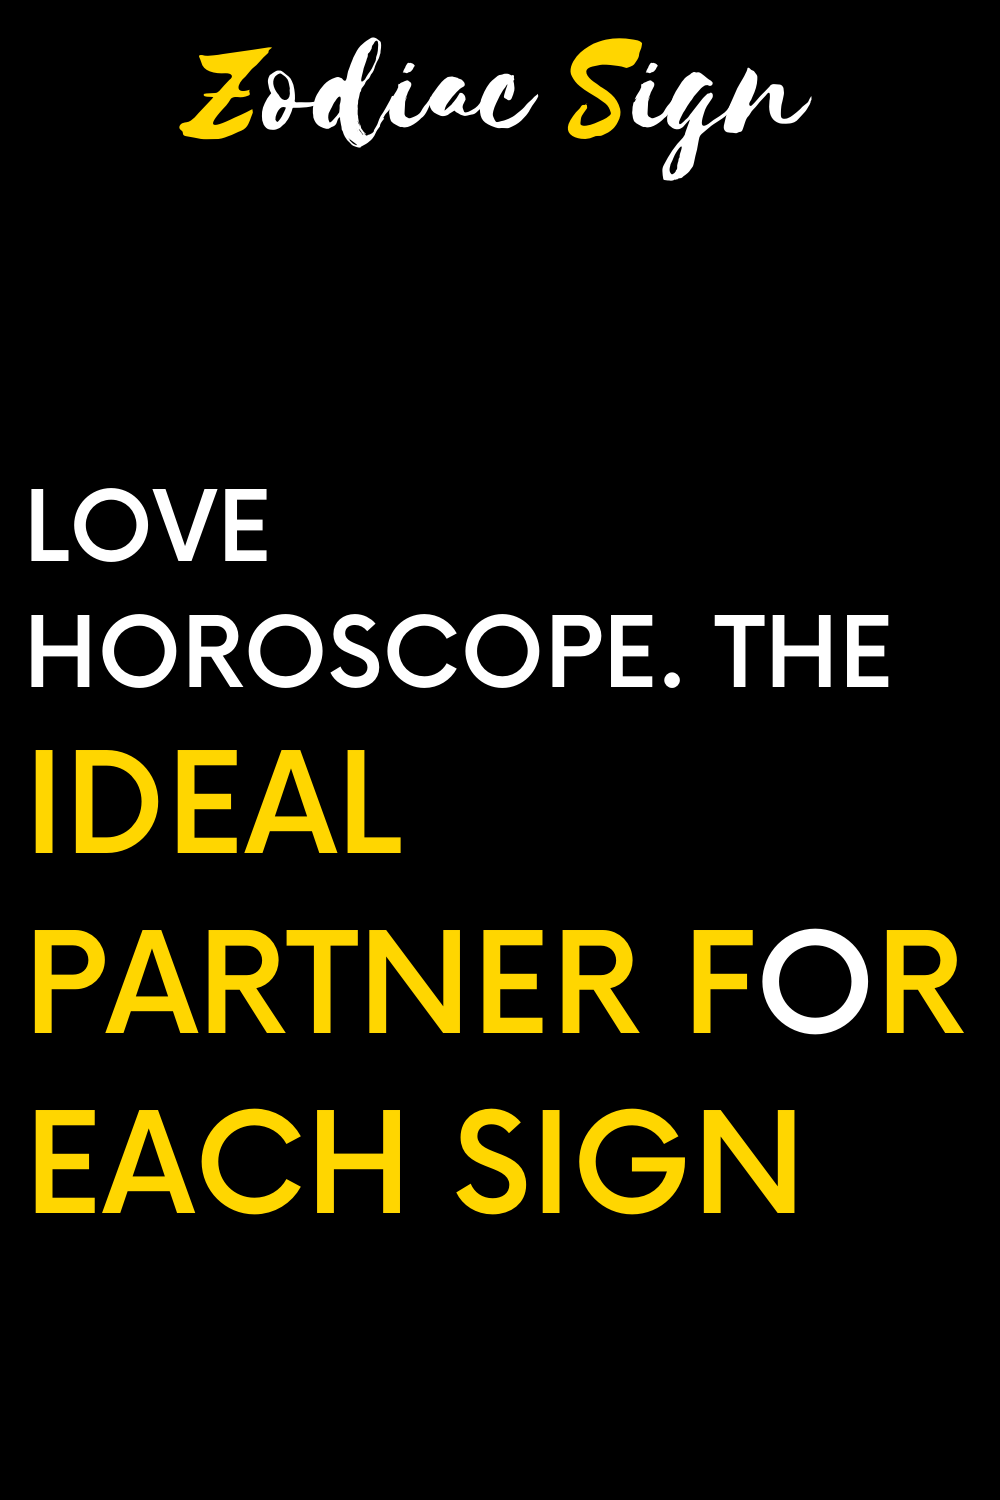 Love horoscope. The ideal partner for each sign